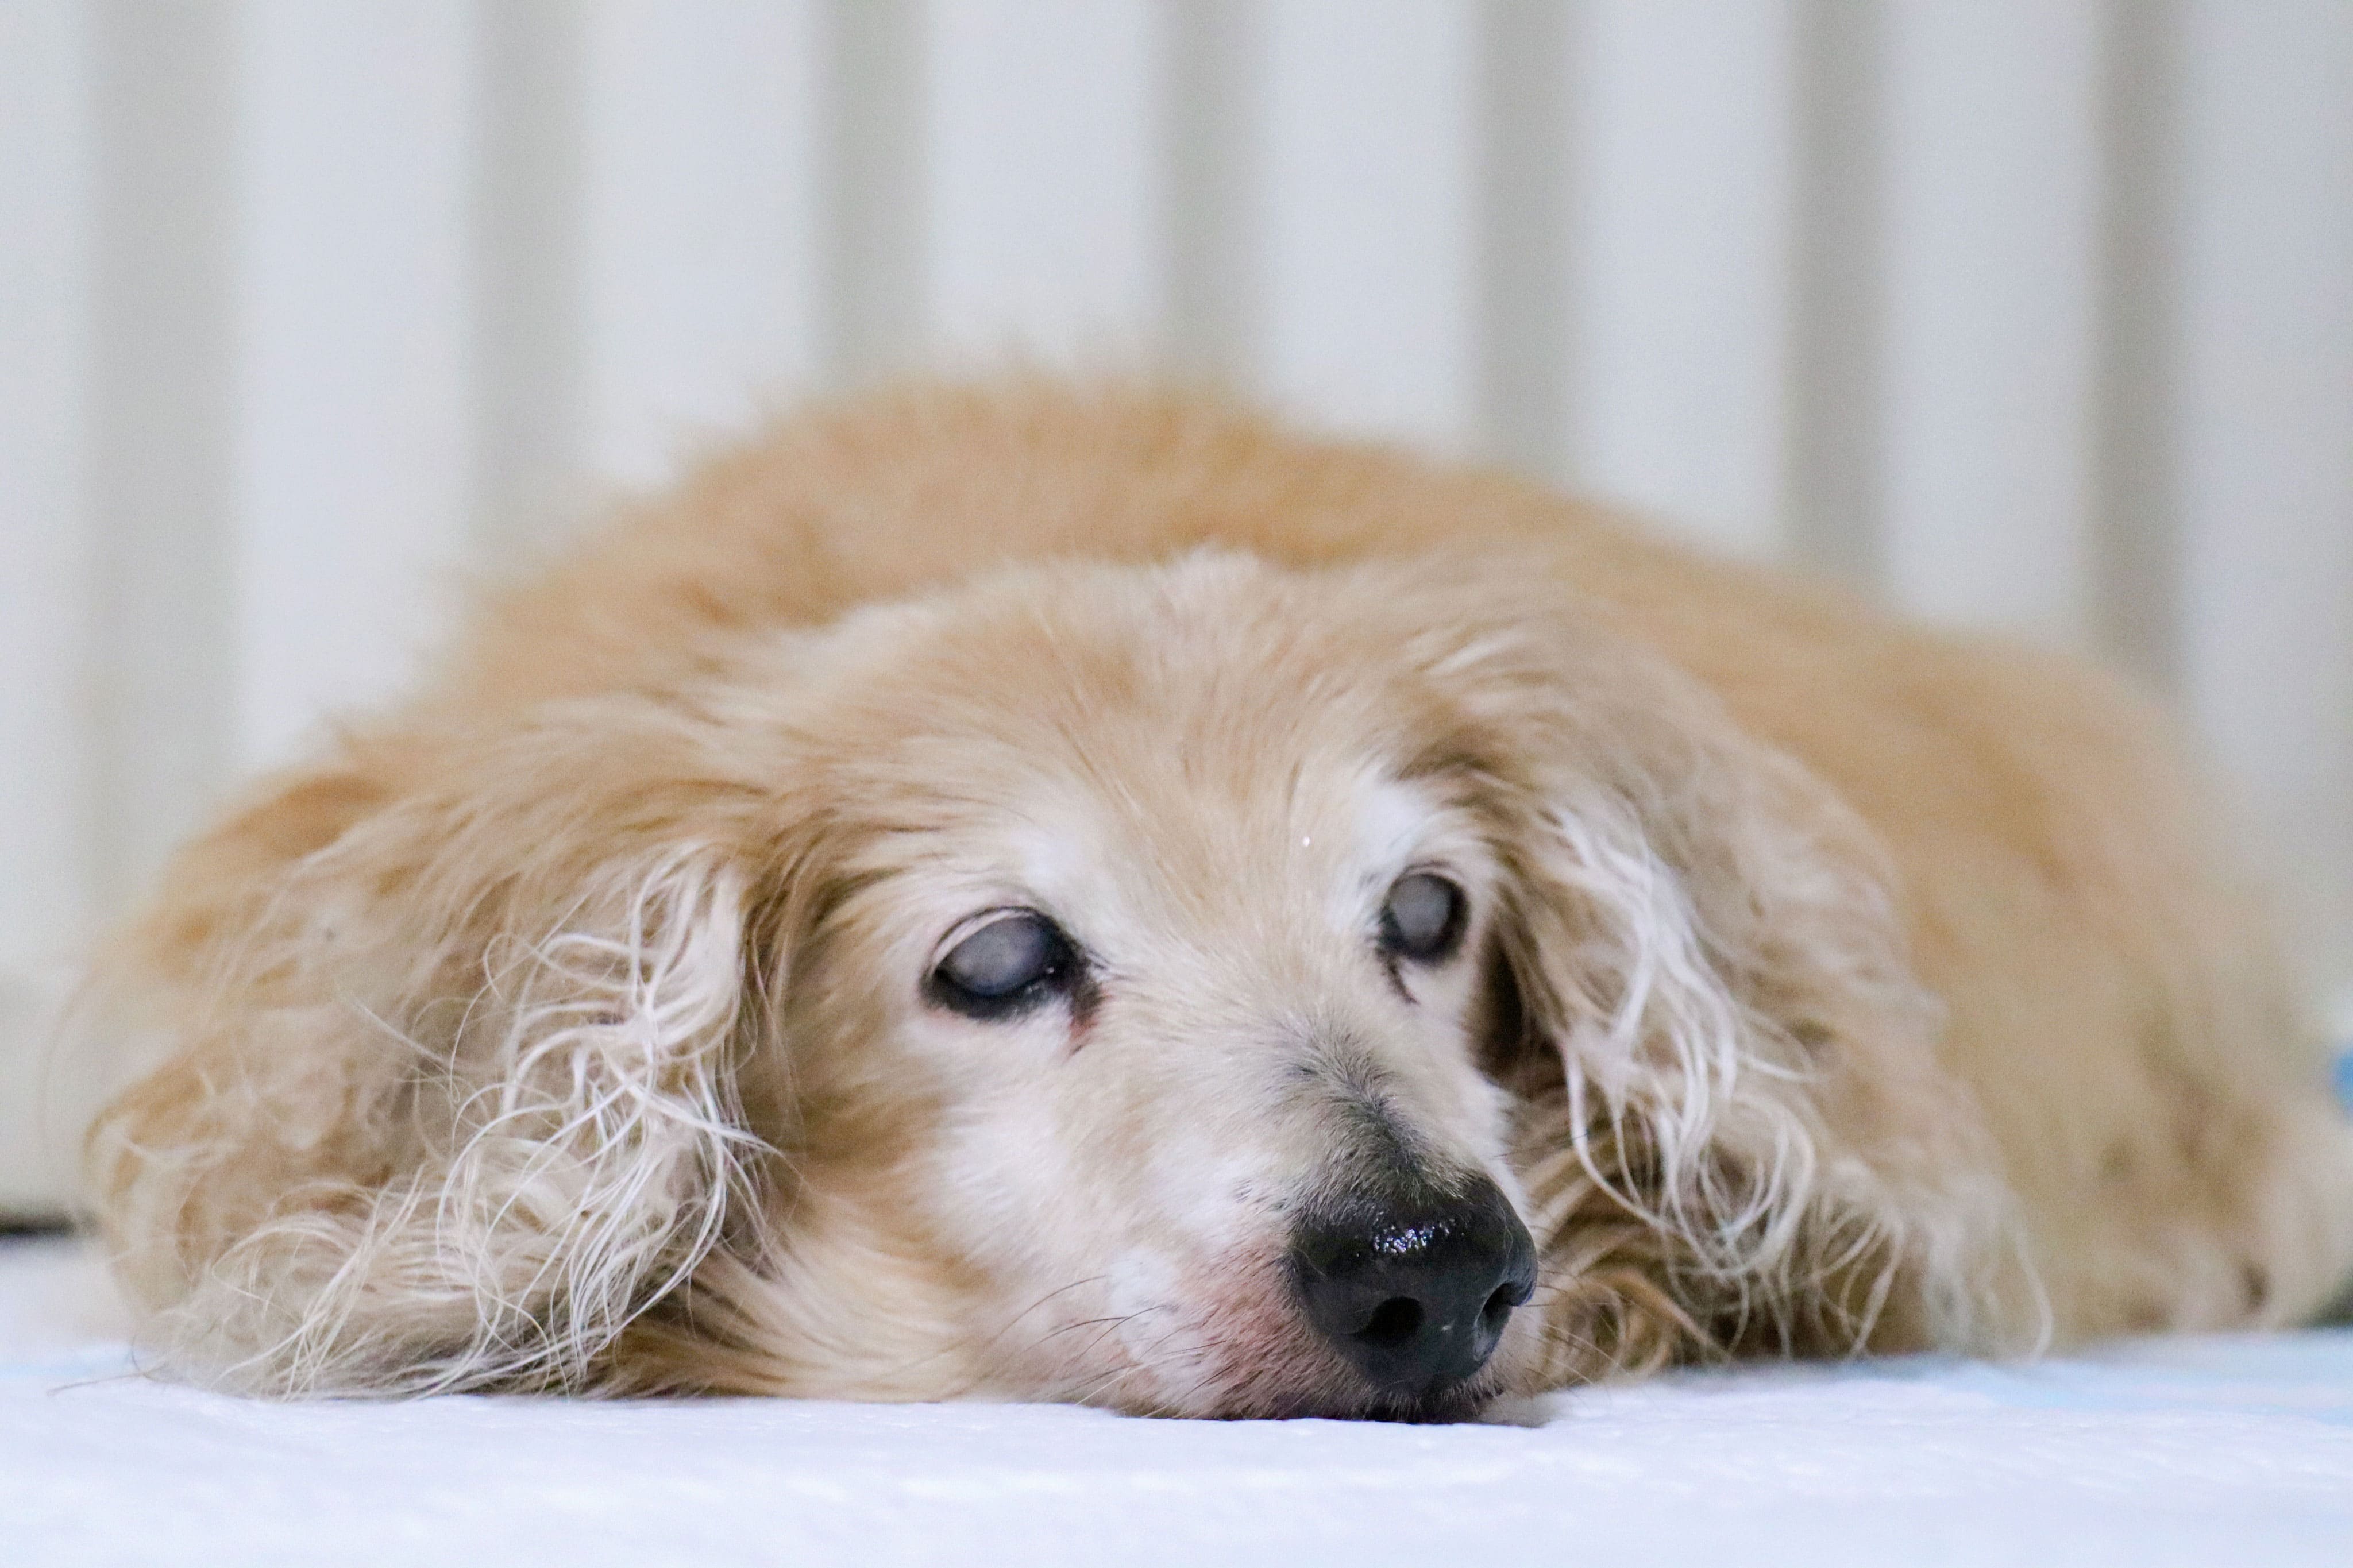 獣医師監修 犬の寿命は シニア期のペット保険加入で医療費に備える 犬 猫のおすすめ動物保険をご紹介 ペット保険station